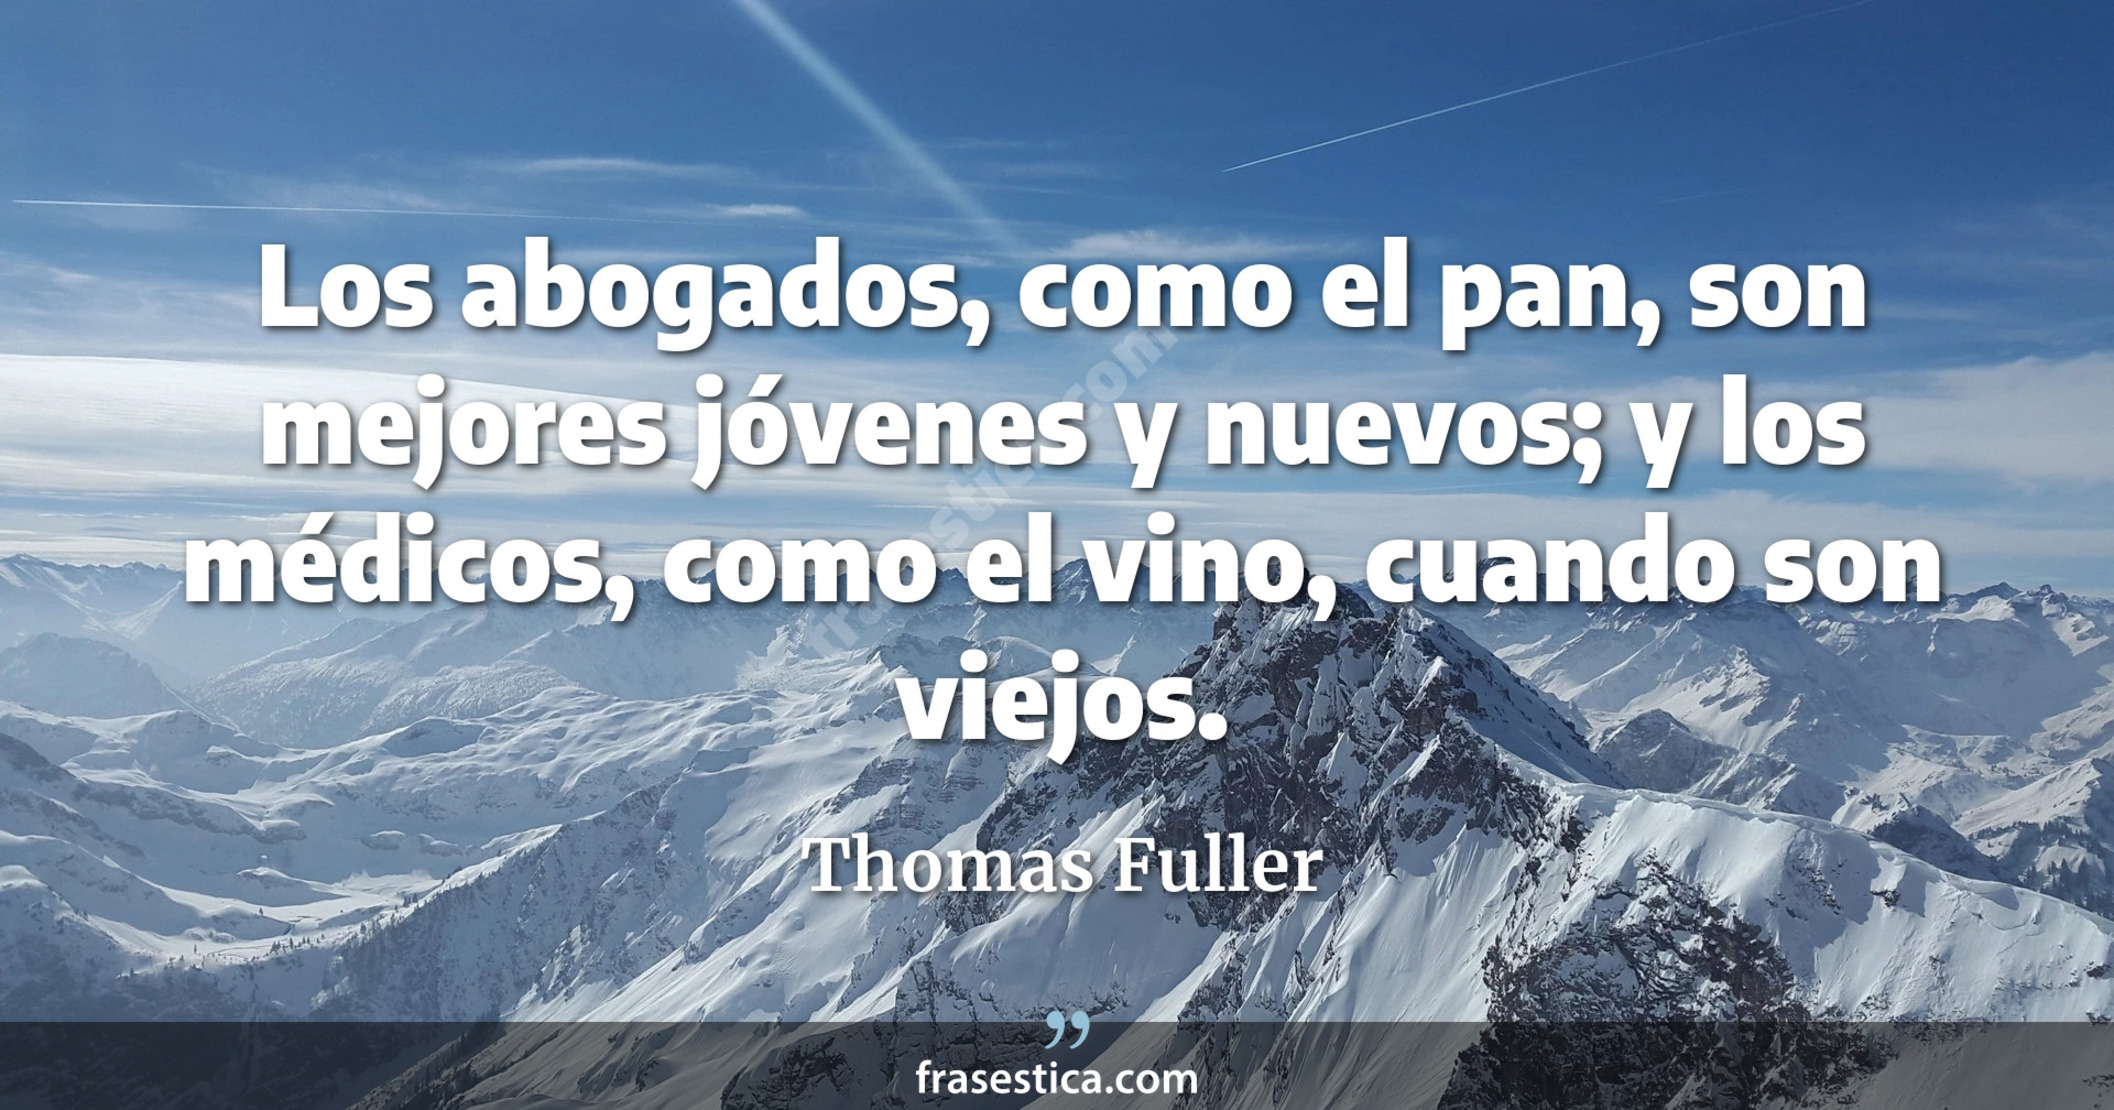 Los abogados, como el pan, son mejores jóvenes y nuevos; y los médicos, como el vino, cuando son viejos. - Thomas Fuller